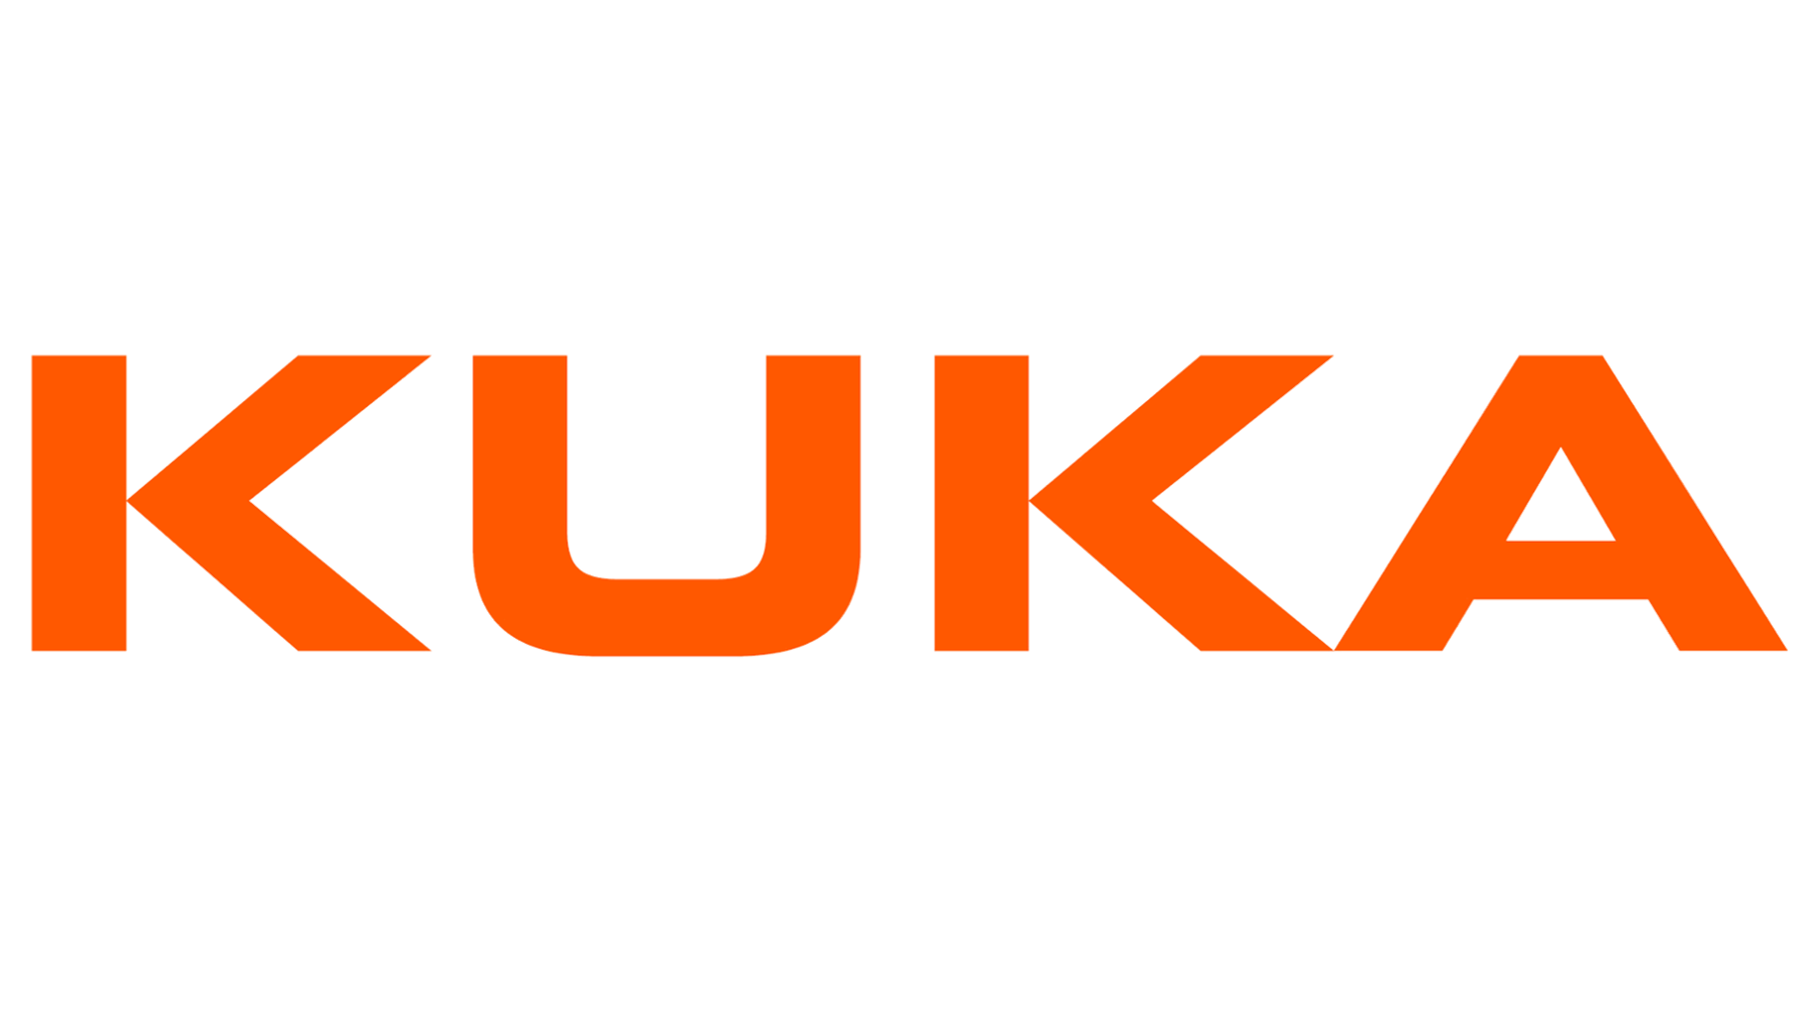 Kuka logo